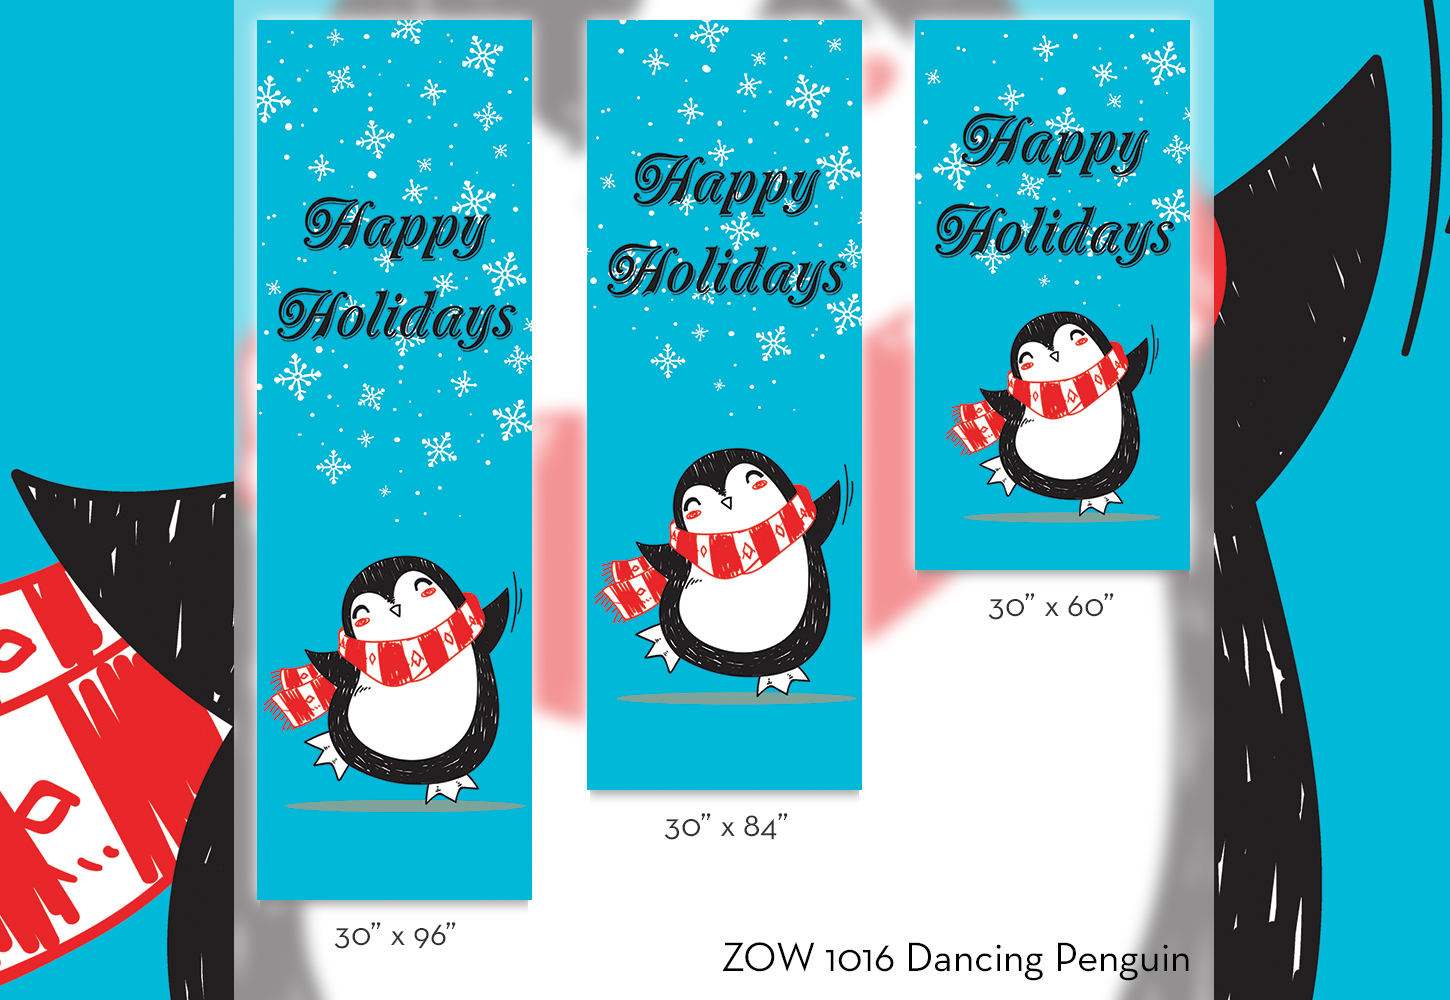 ZOW 1016 Dancing Penguin